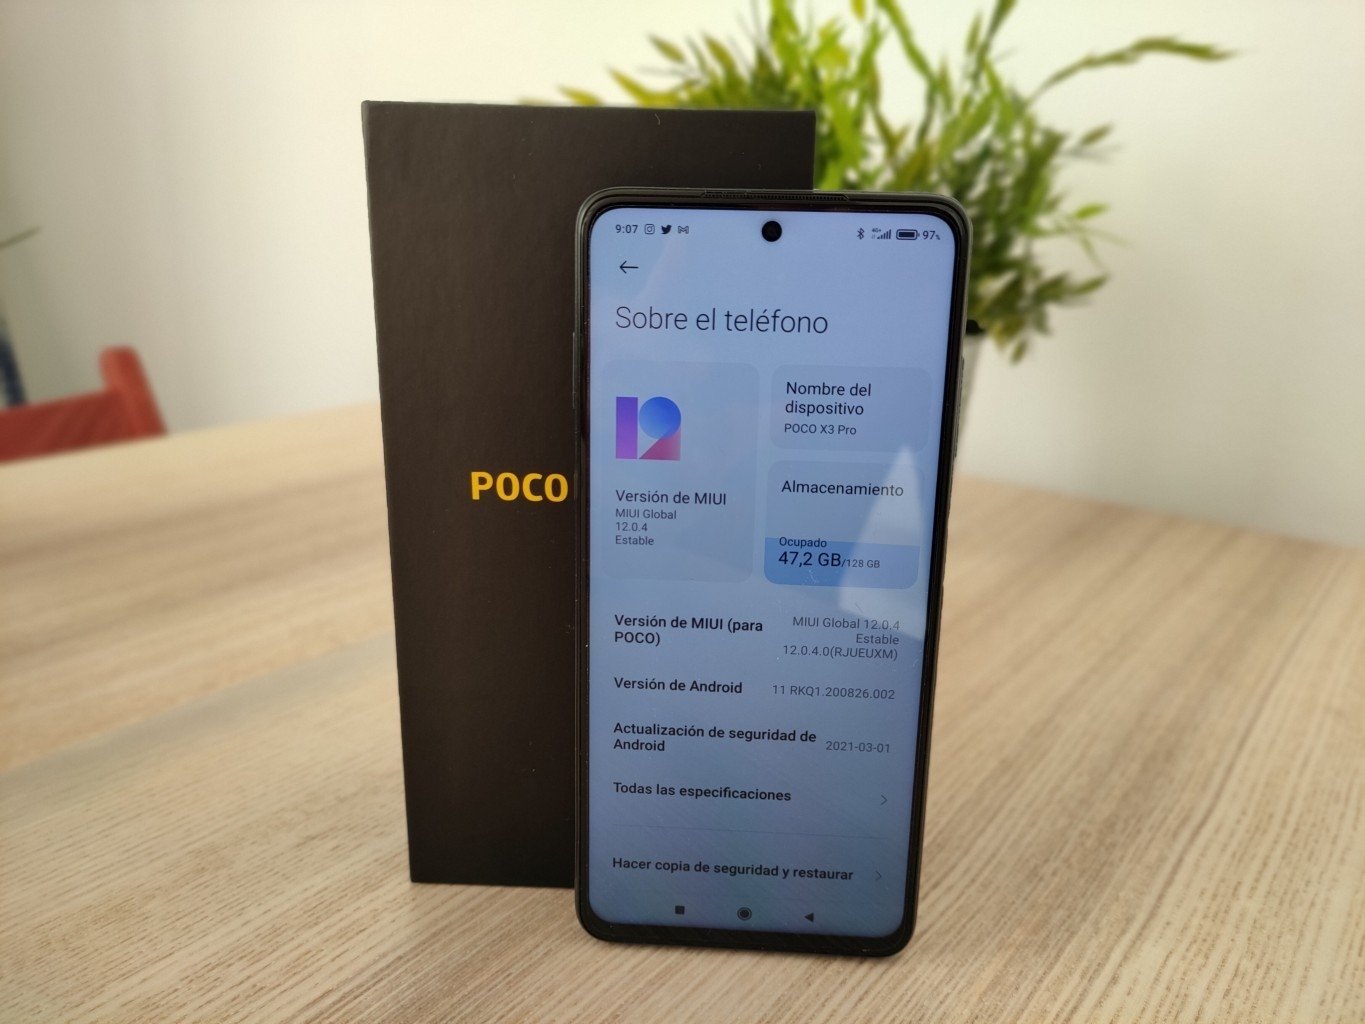 El POCO X3 Pro cuenta con Android 11 corriendo bajo MIUI 12